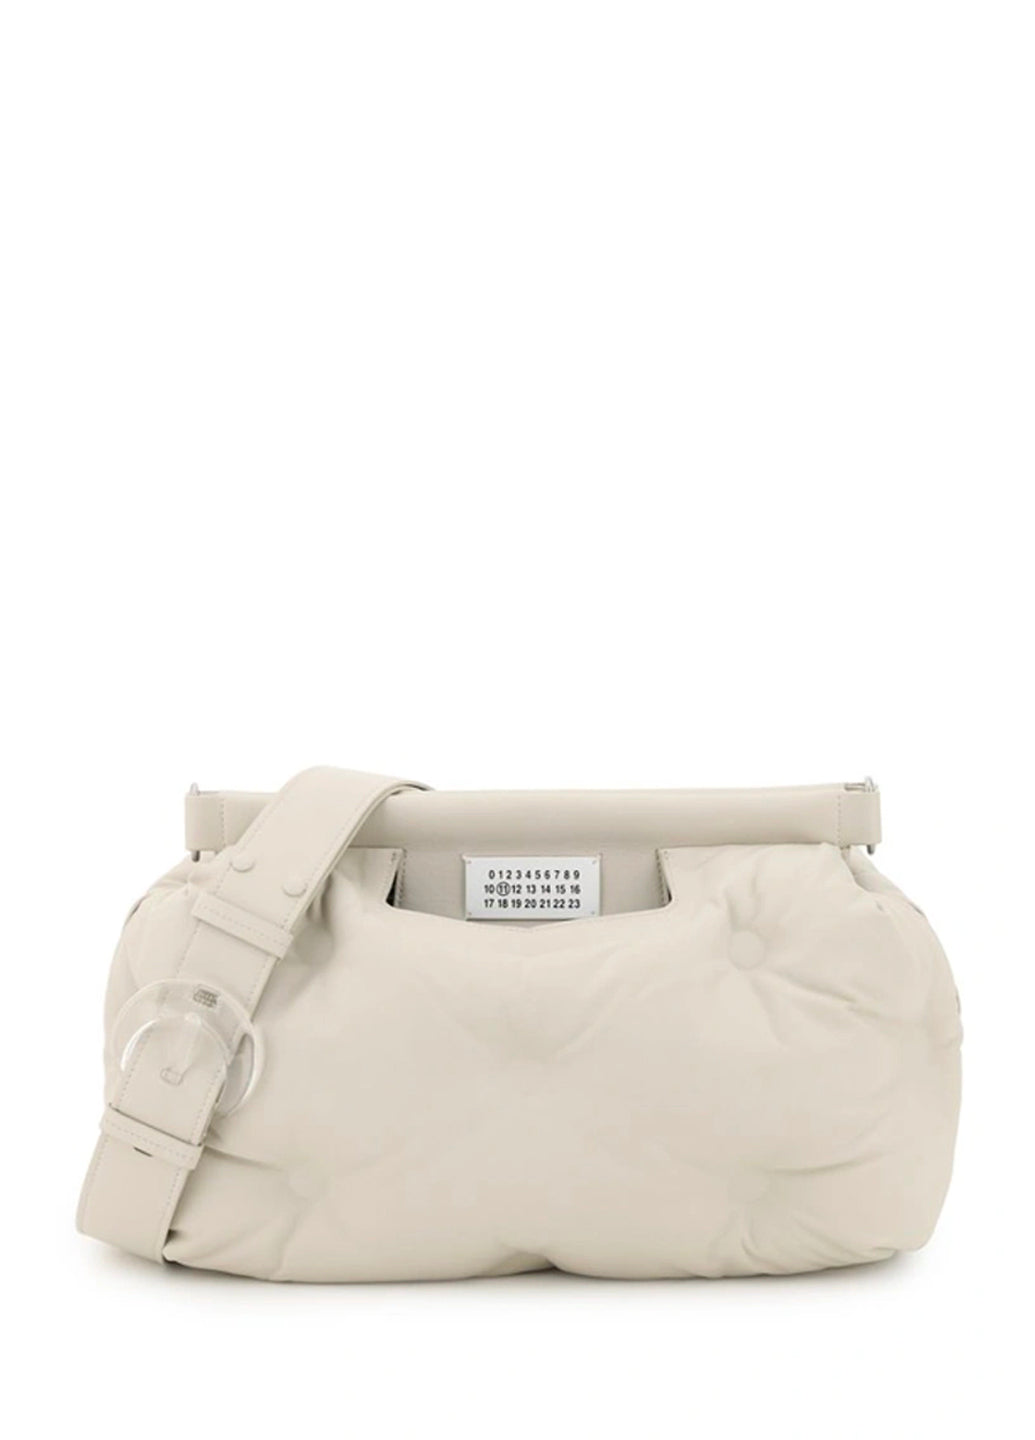 Maison Margiela Glam Slam Medium leather shoulder bag White